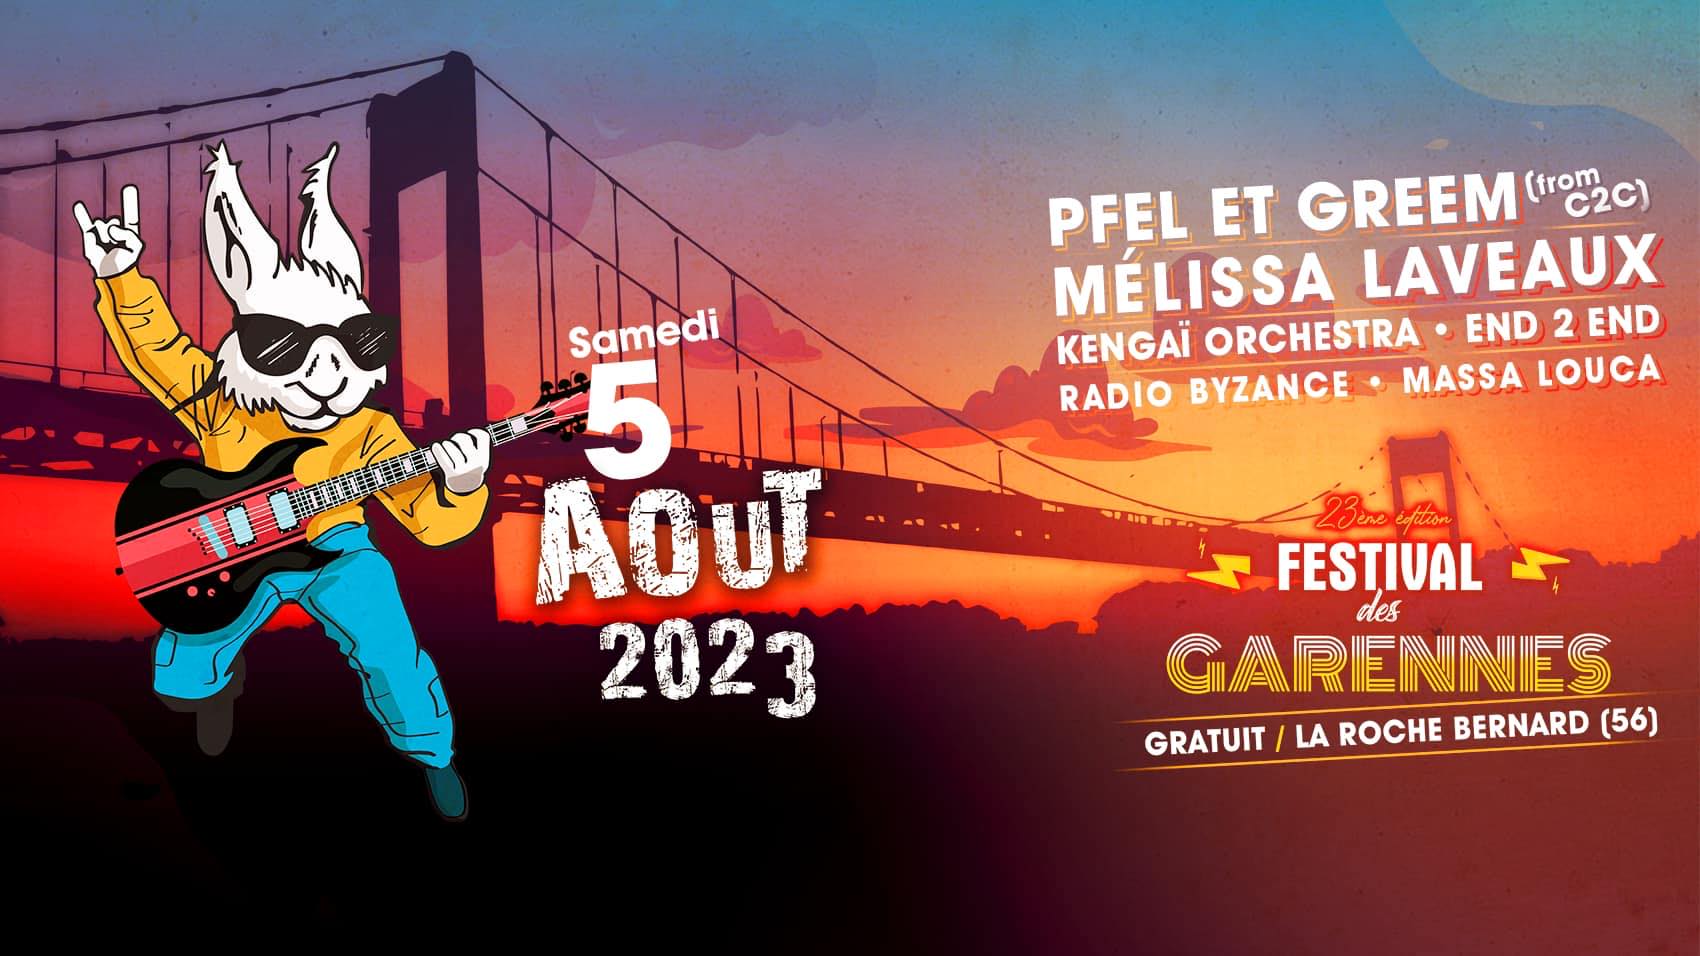 Festival des Garennes, 5 août 2023 à La Roche-Bernard (56)